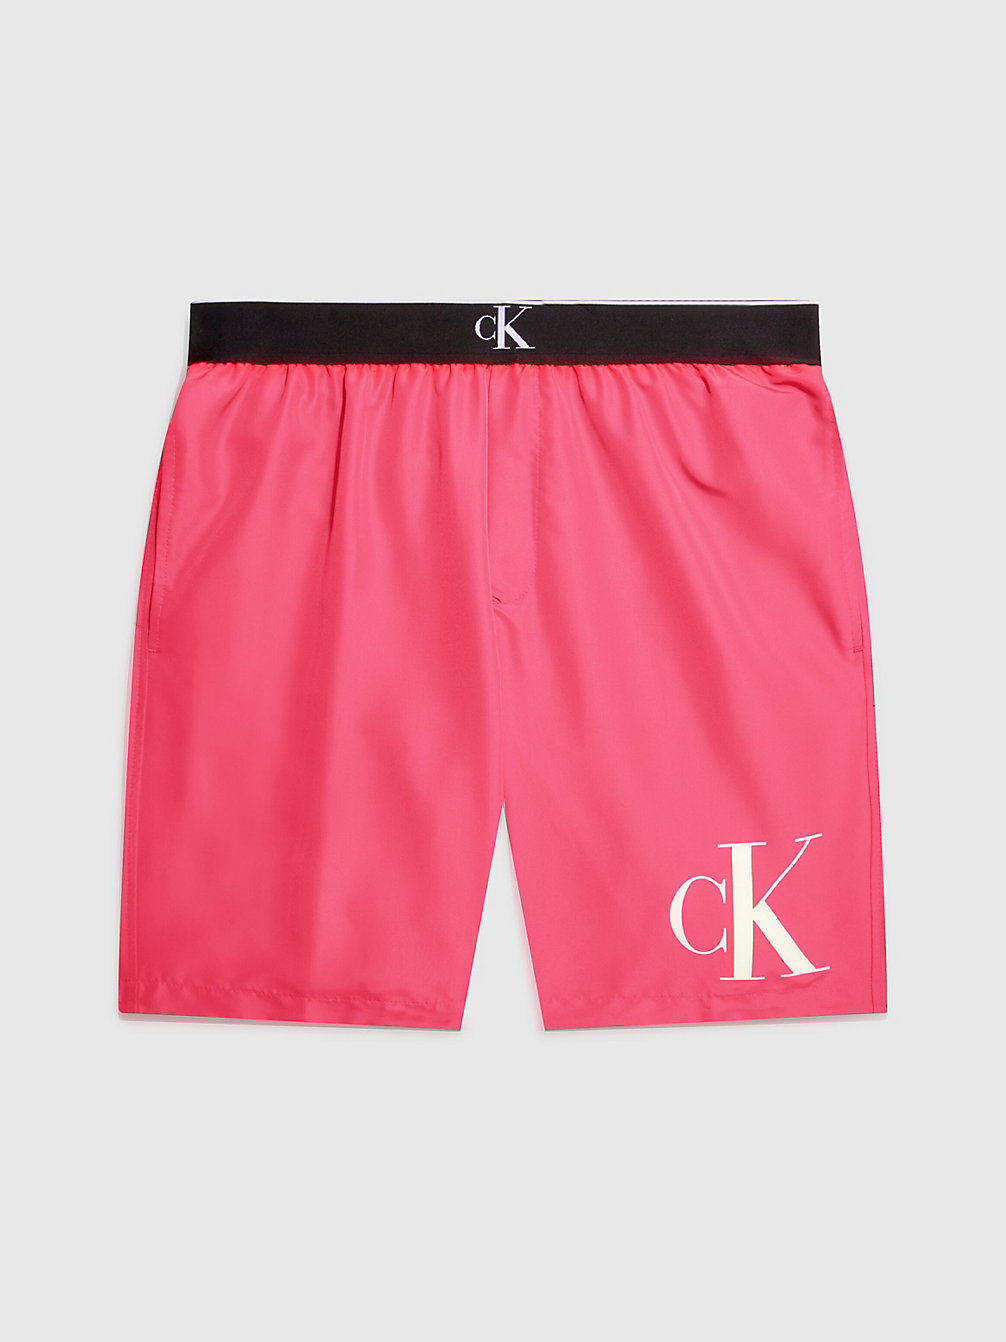 PINK FLASH > Lange Badeshorts – CK Monogram > undefined Herren - Calvin Klein